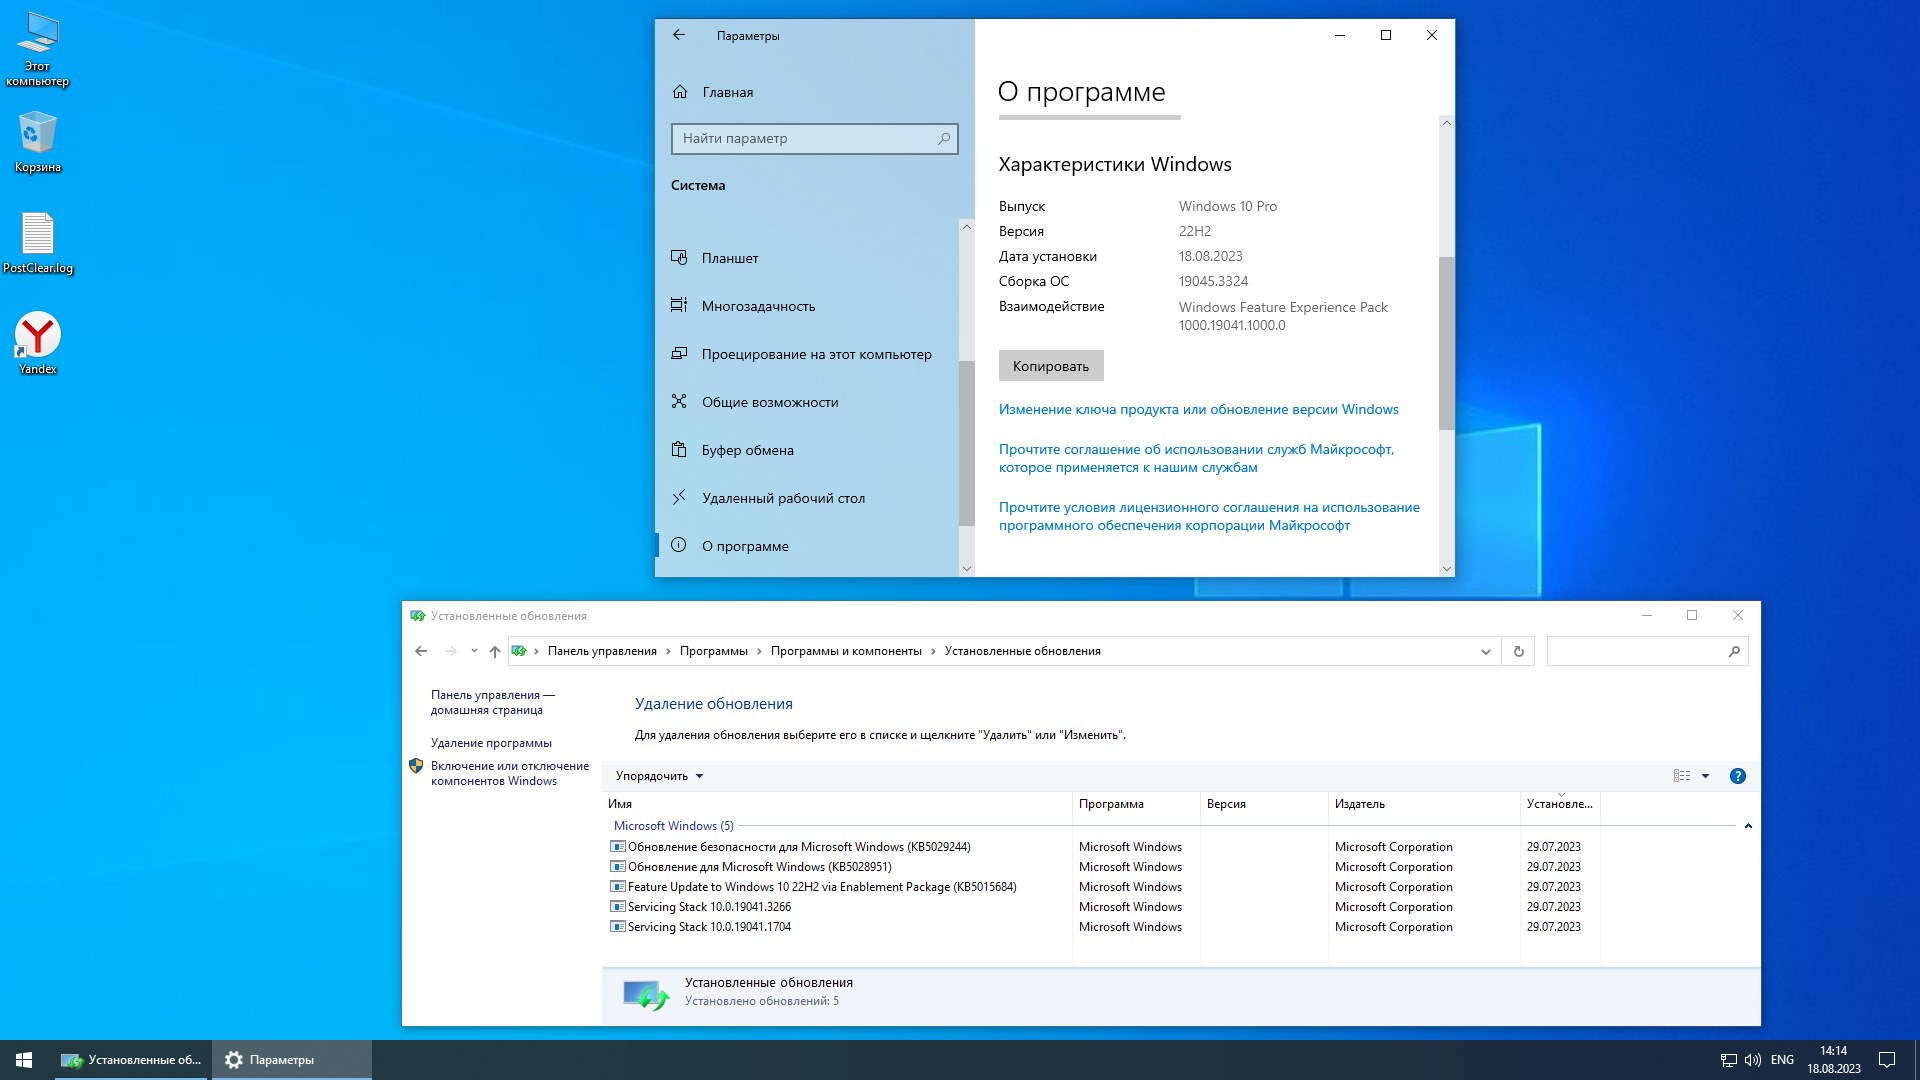 Windows 10 pro 22h2 sanlex. Автоматическое обновление виндовс 10. Отключил обновления Windows Скриншот. Windows 10 Pro x64 22h2 Flibuster.